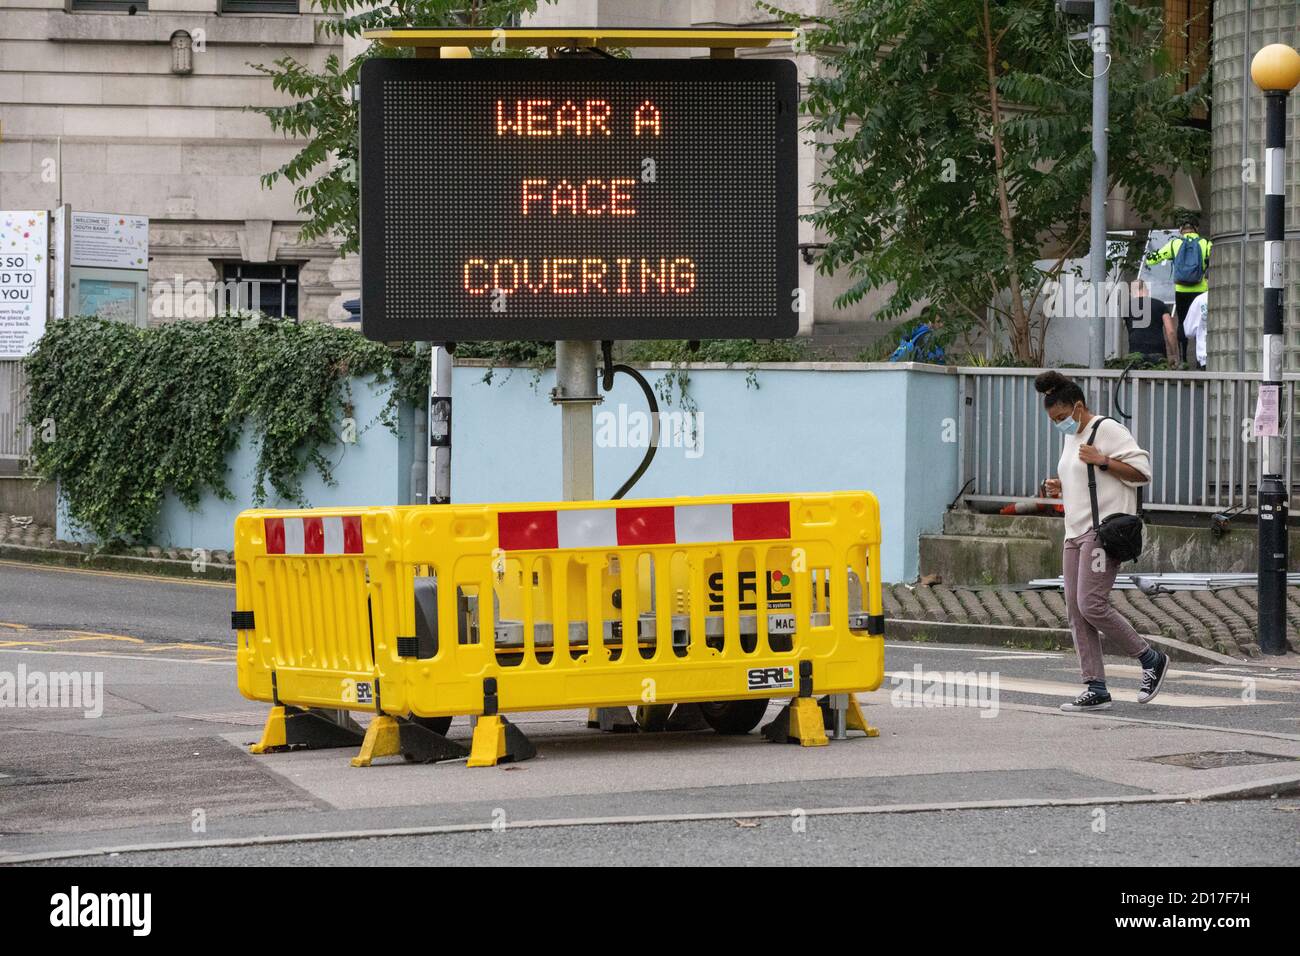 "Tragen SIE EINE Gesichtsbedeckung" Advisory-Schild weist Pendler, eine Gesichtsmaske auf öffentlichen Verkehrsmitteln tragen, Waterloo Station, London, England, Vereinigtes Königreich Stockfoto